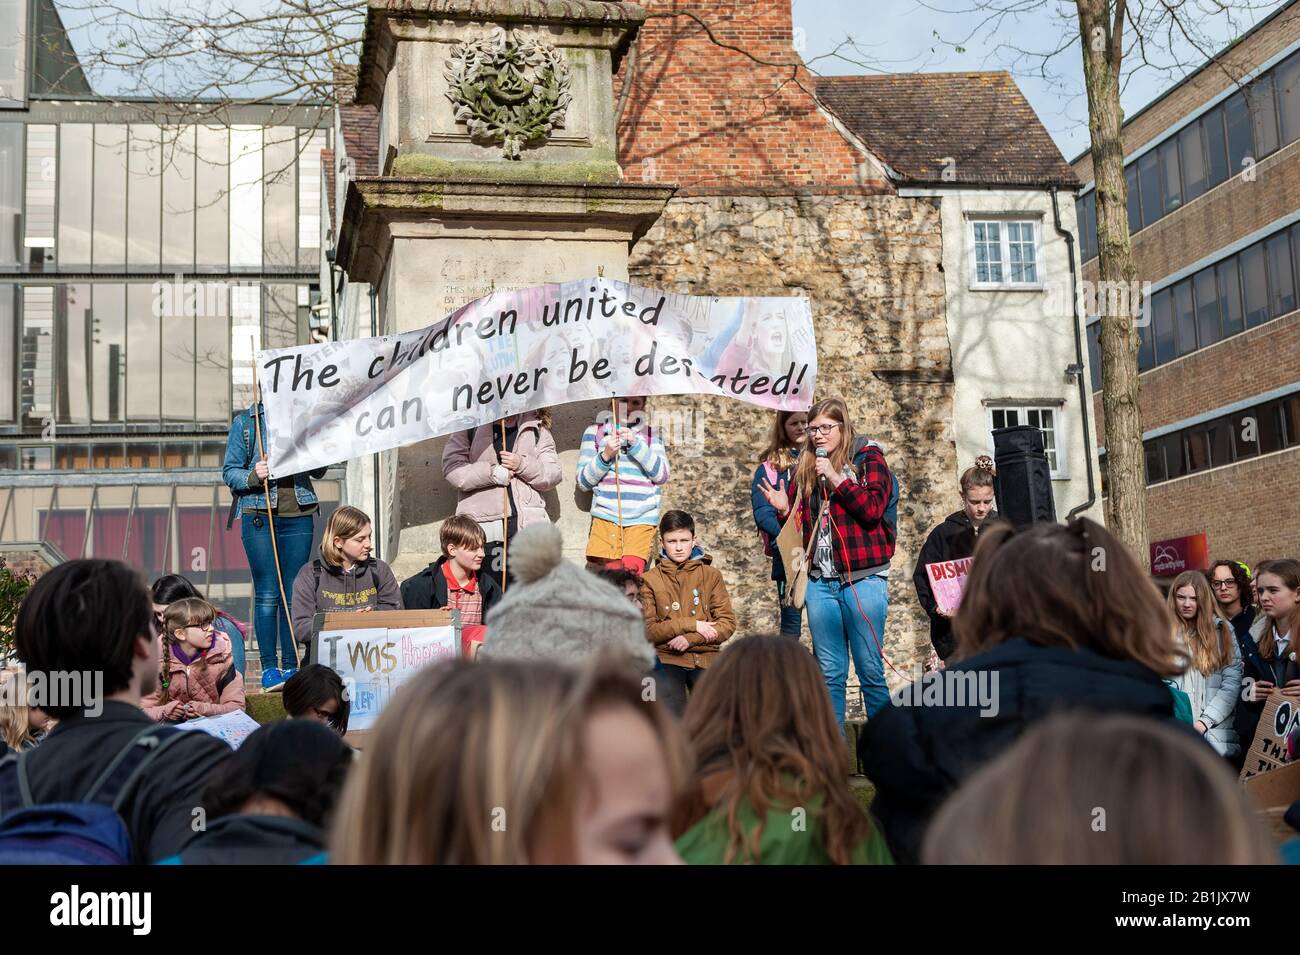 Les manifestants qui appellent à l'unité dans la lutte contre le changement climatique, tandis que EJ Fawcett s'adresse à la foule lors de la Saint Valentin Youth Climate Strike à Oxford, au Royaume-Uni, à l'occasion de l'anniversaire de la première grève des jeunes britanniques pour le climat en 2019. Banque D'Images